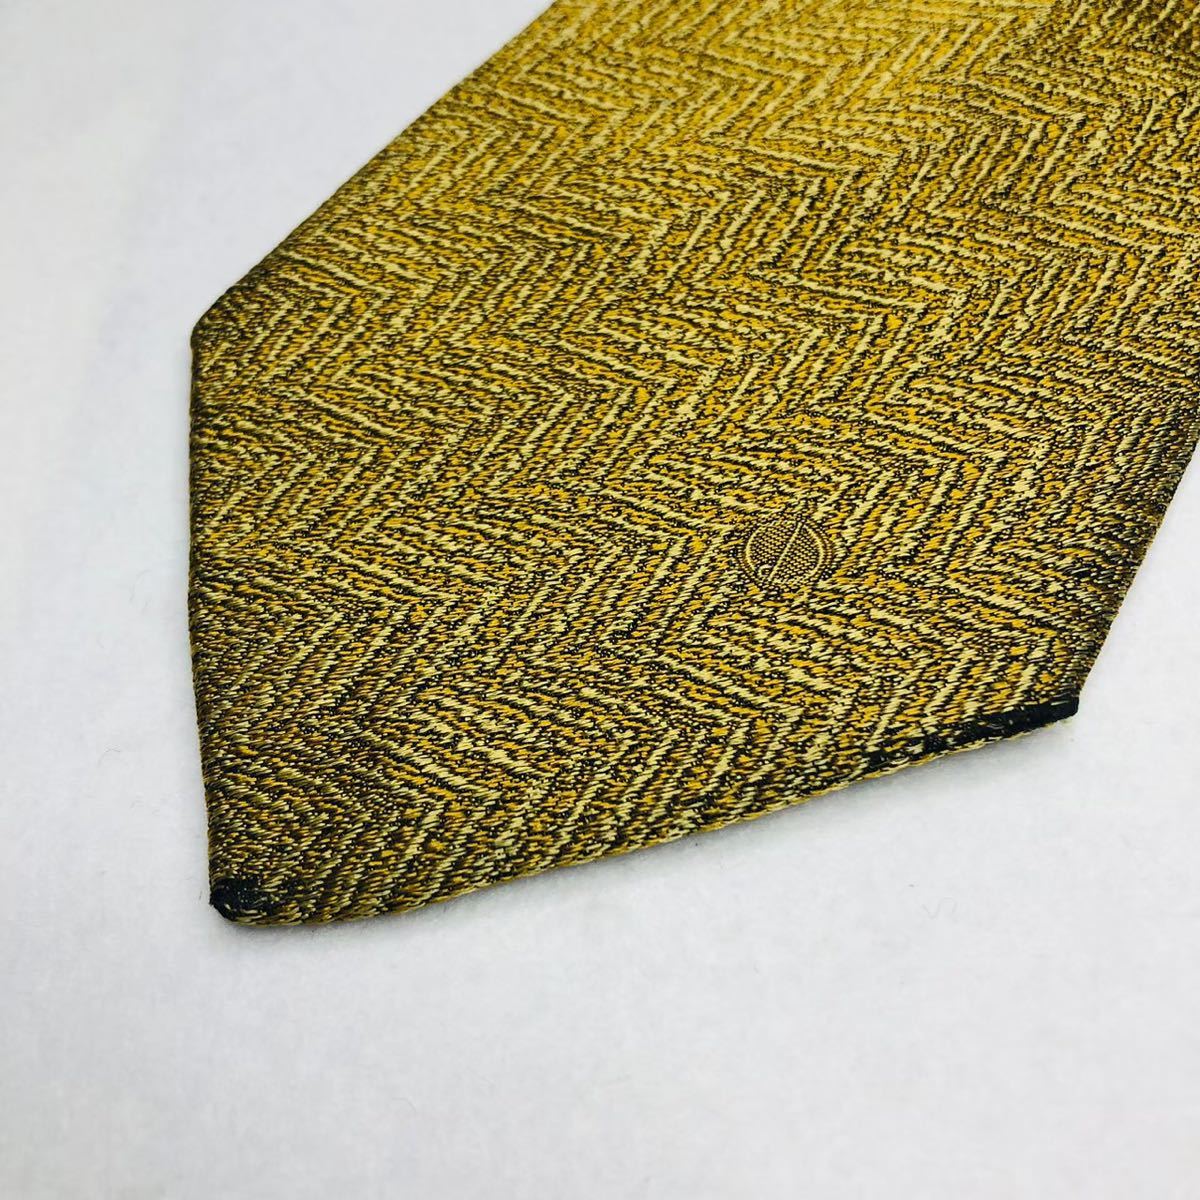 dunhill Dunhill necktie high brand Gold high class silk 100%